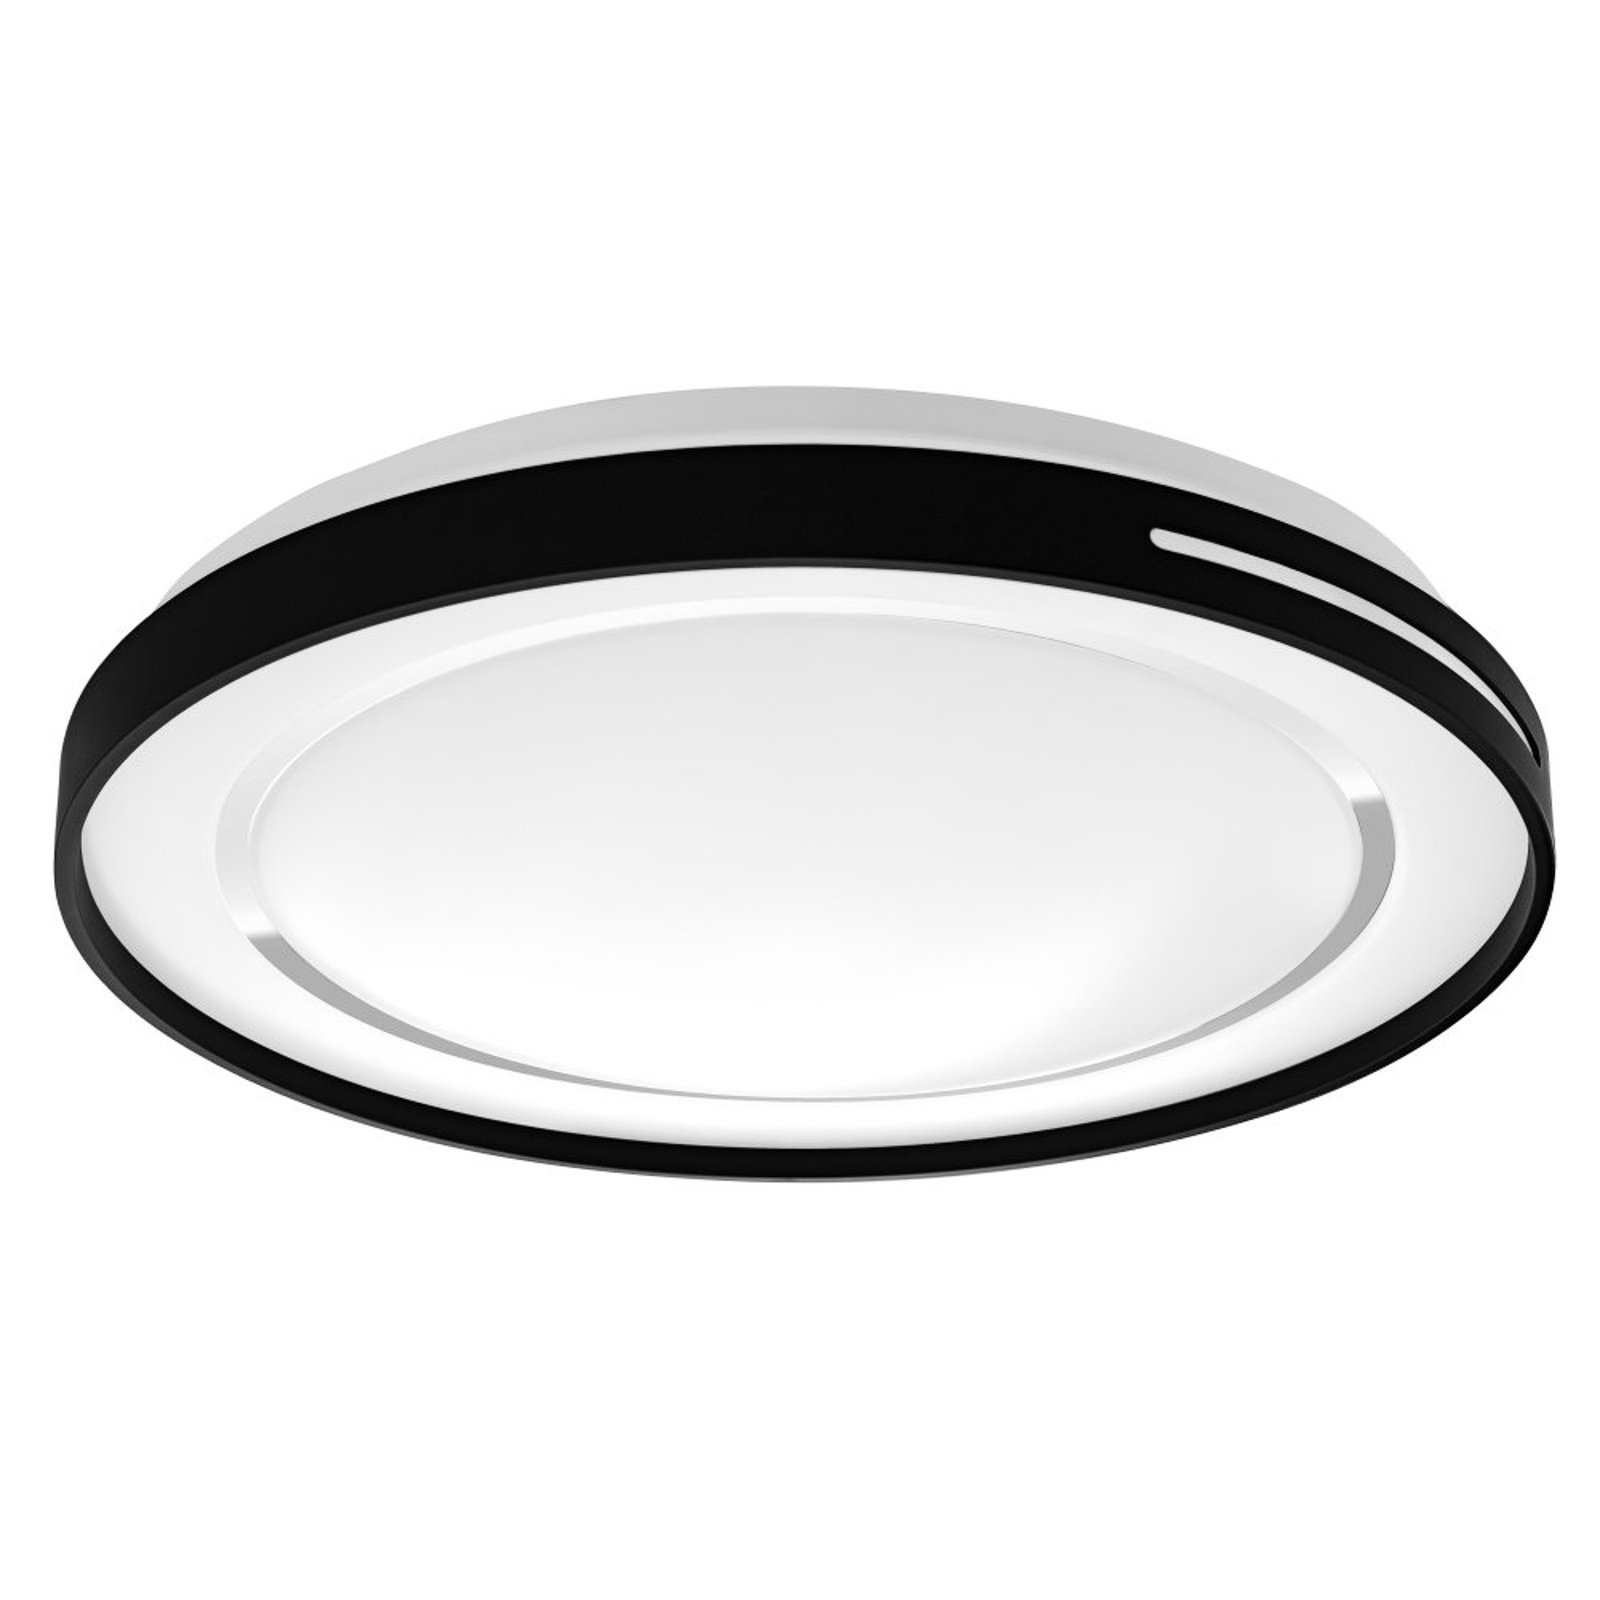 LEDVANCE SMART+ WiFi Orbis Lisa LED stropní světlo